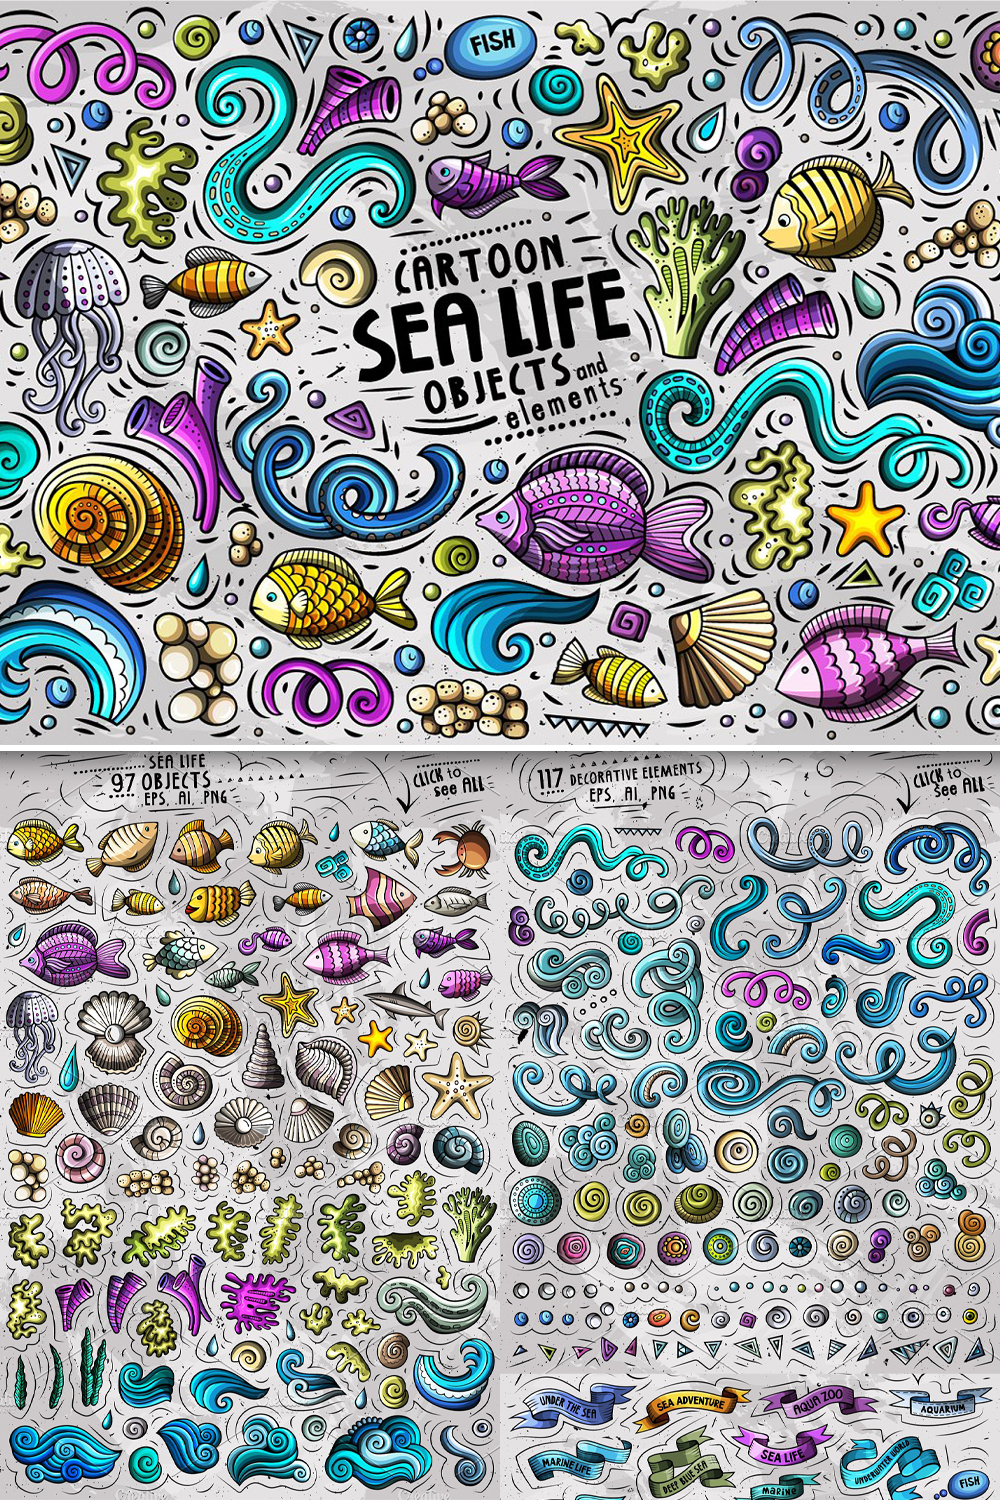 Sea life objects set pinterest.